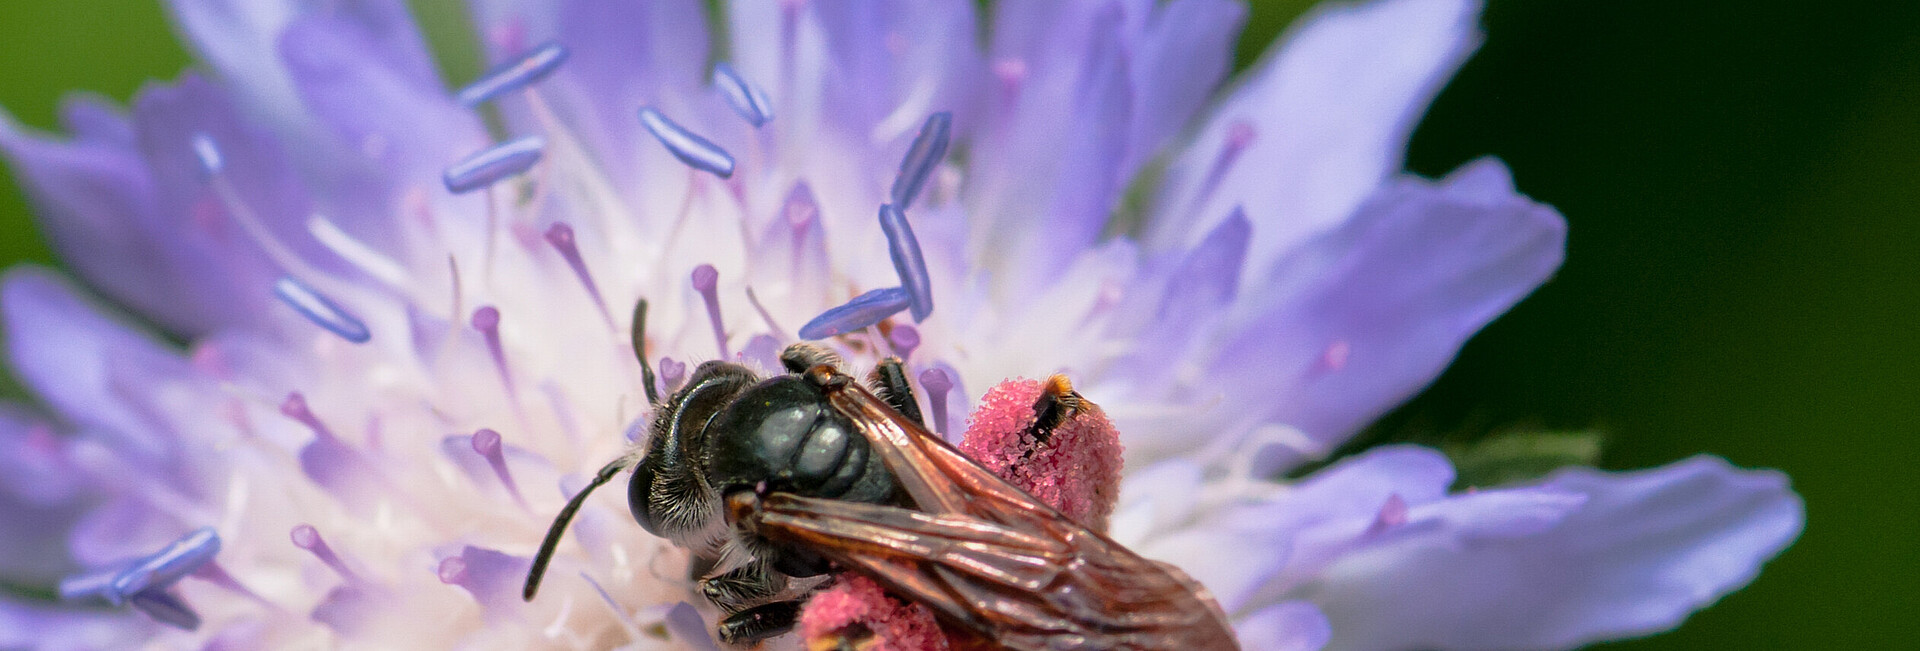 Wildbiene auf violetter Blüte